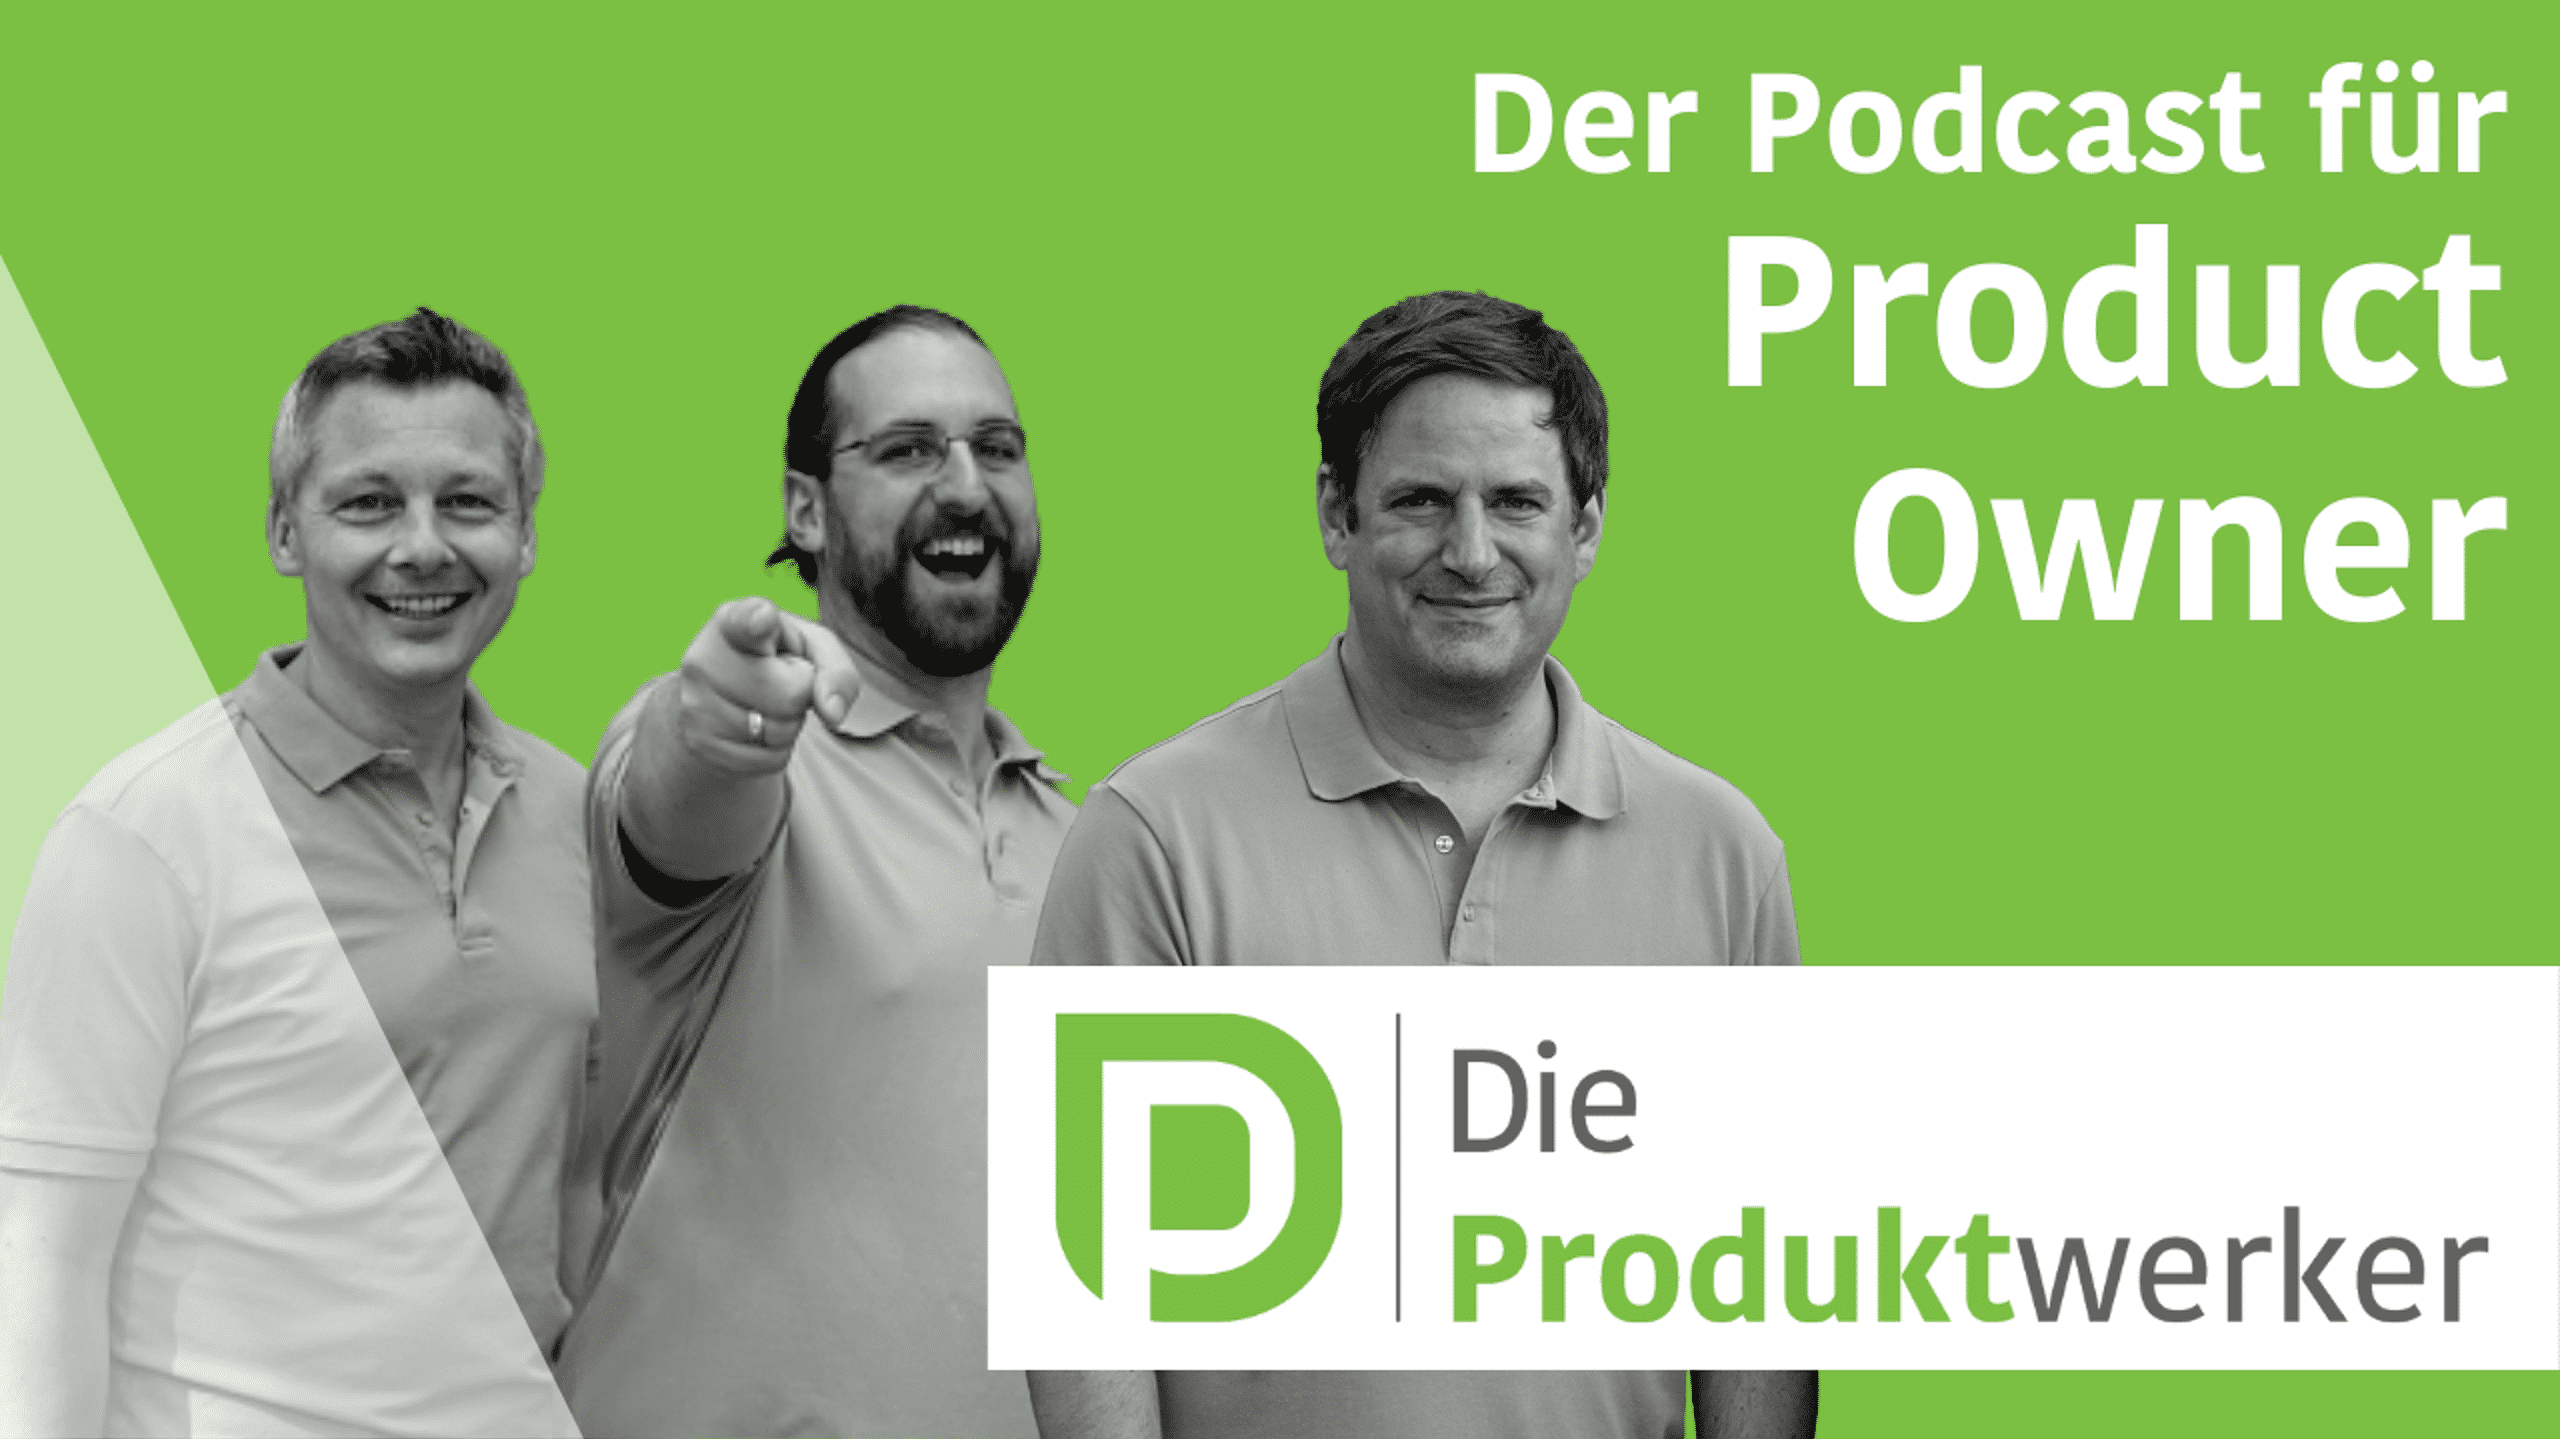 Produktwerker auf einem Bild (3 Männer), dazu Textg "Der Podcast für Product Owner"